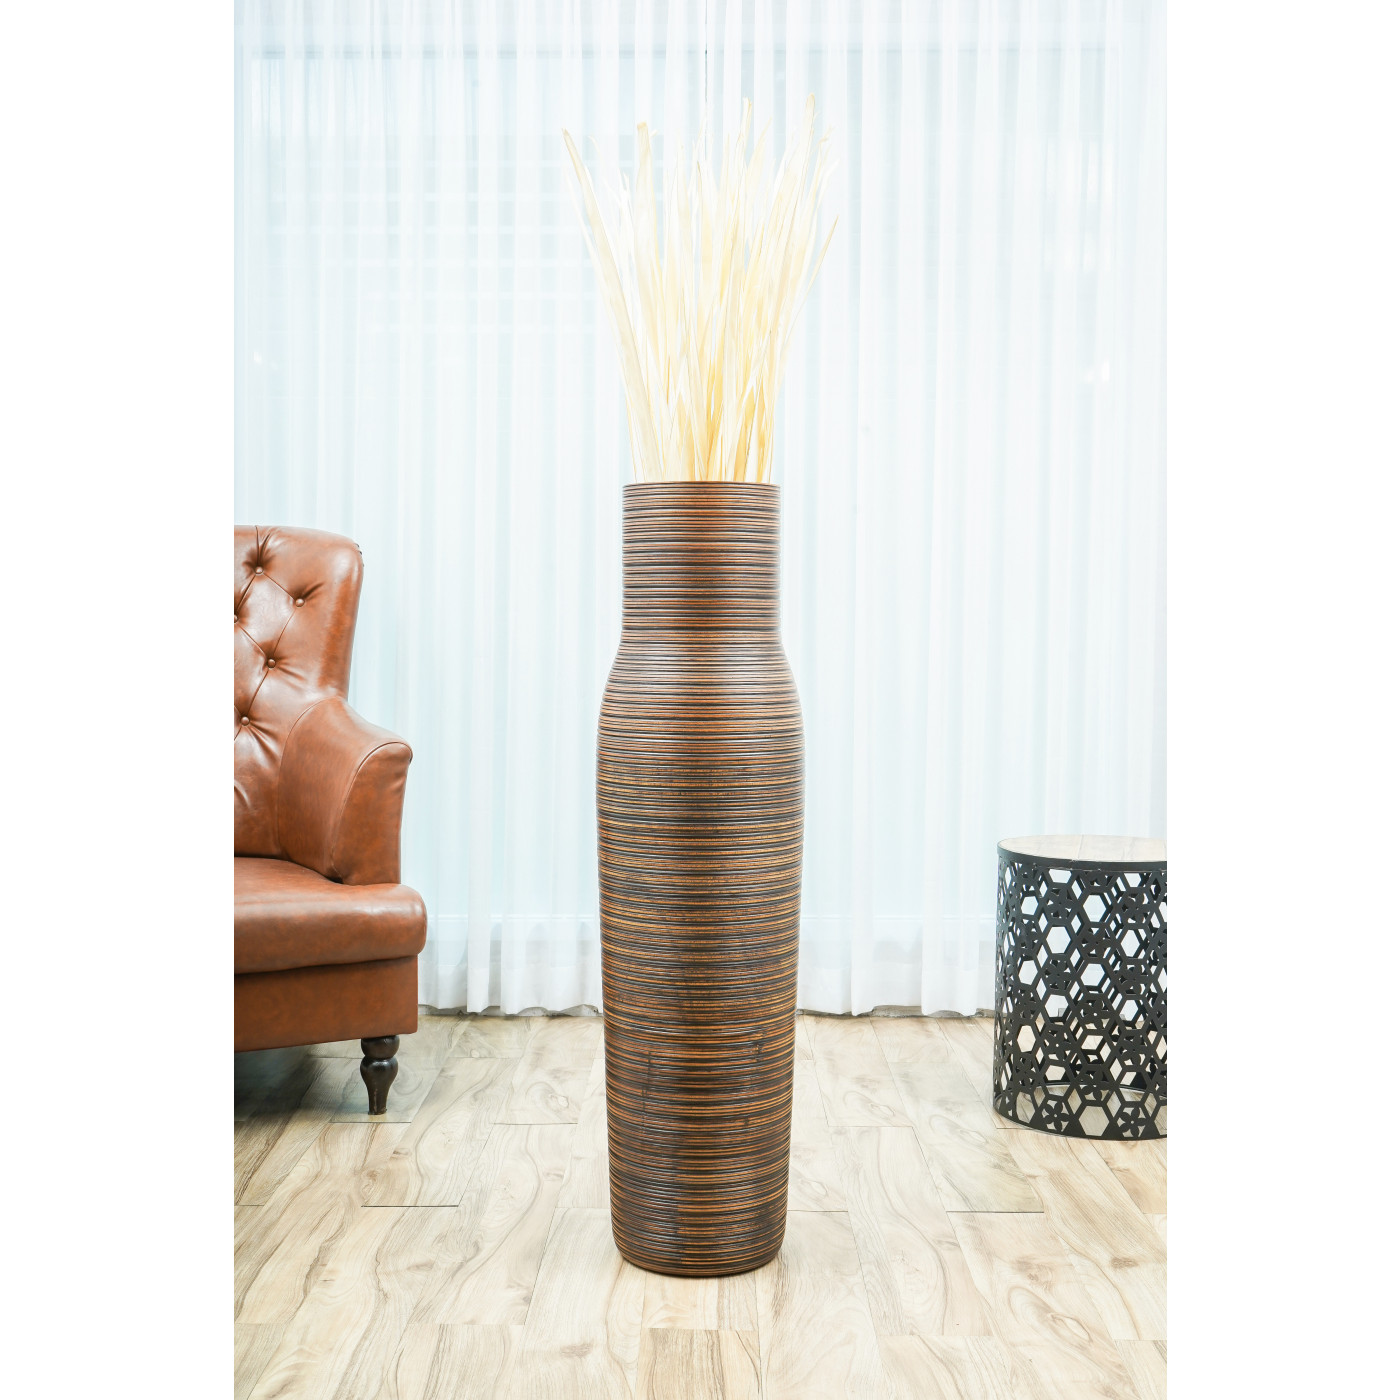 Leewadee Large Floor Vase – Handmade Flower Holder Made of Wood 